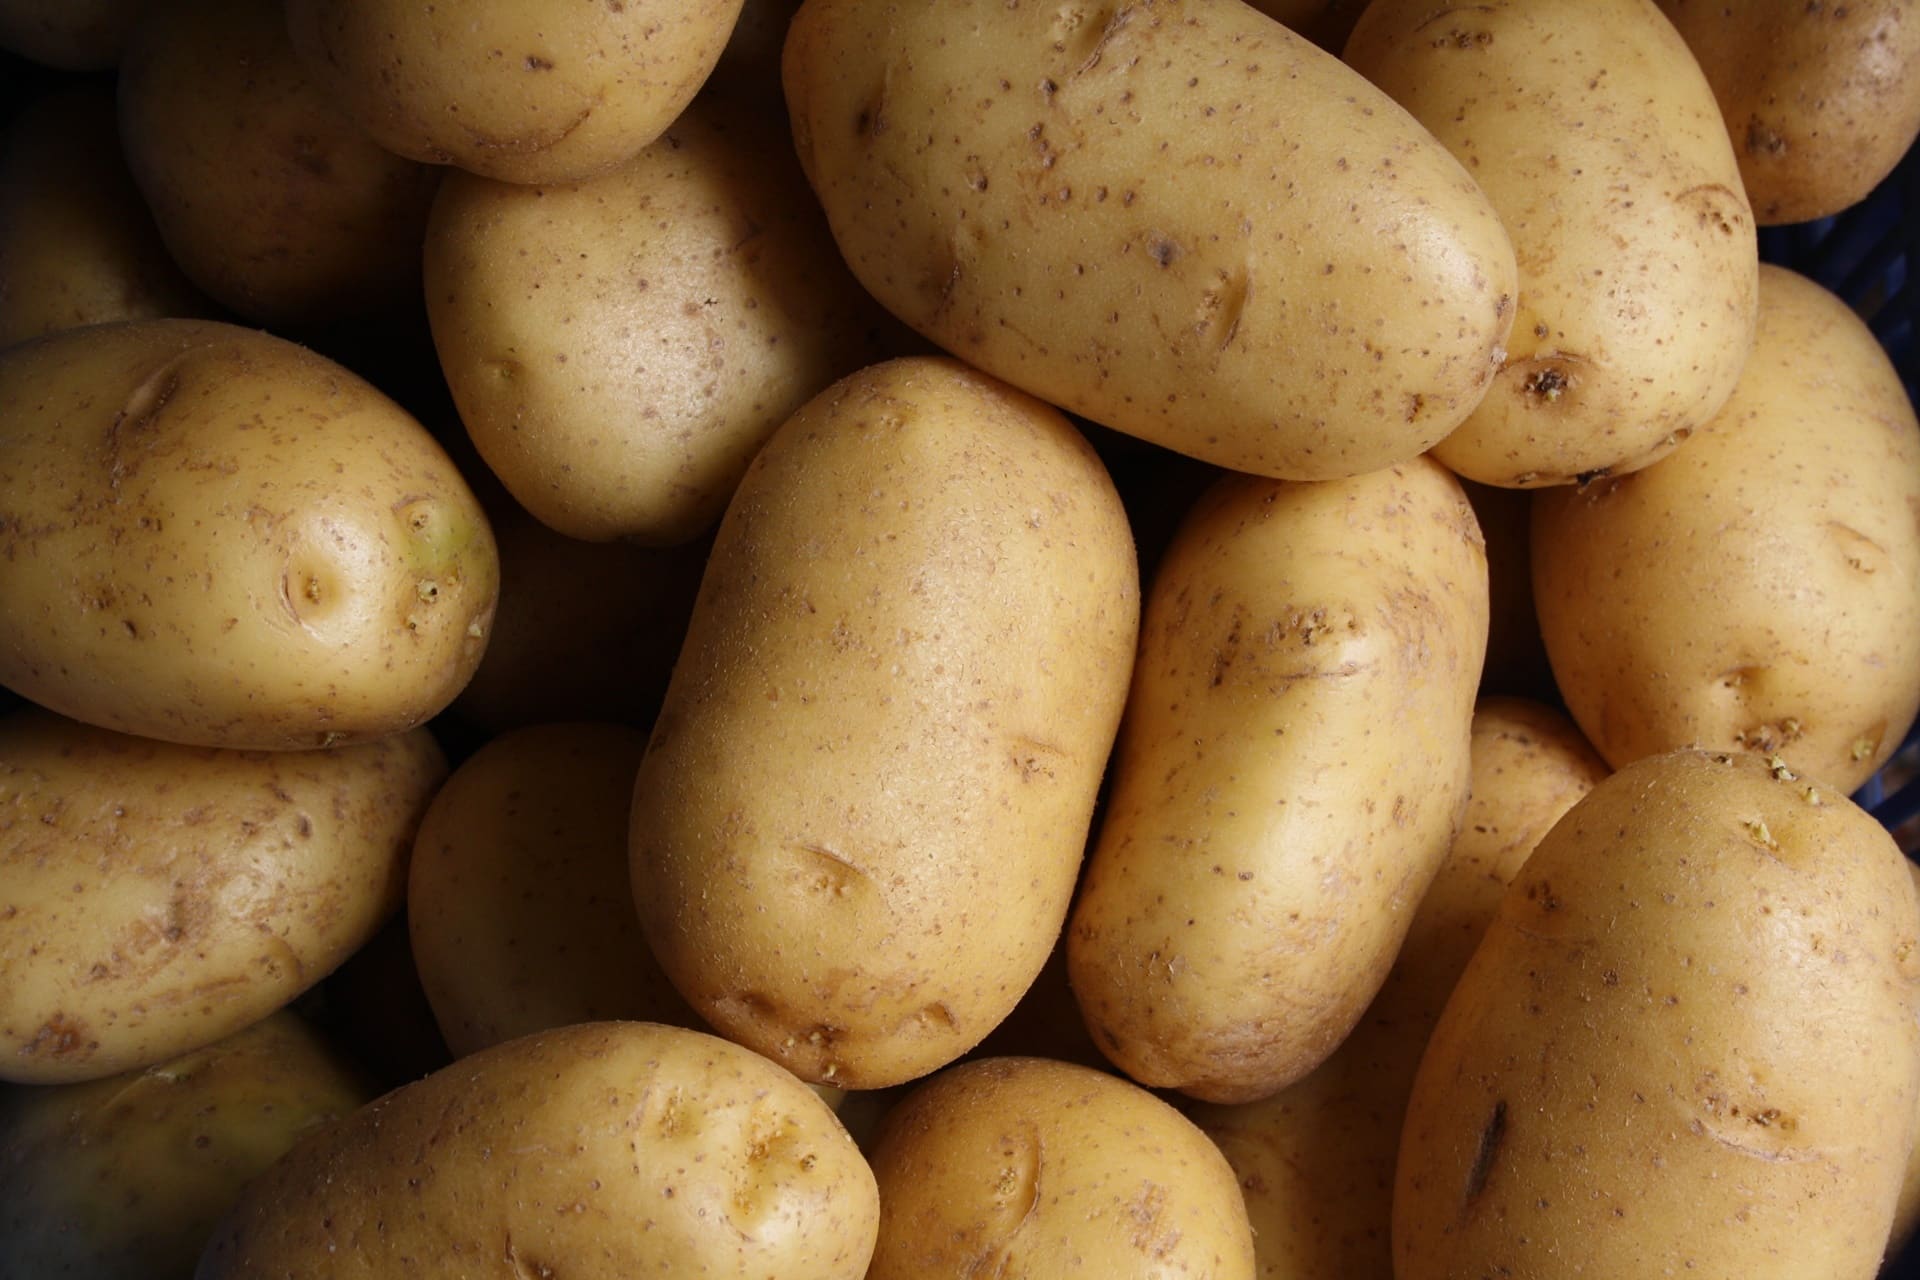 United States, potato exports: $2.2 billion